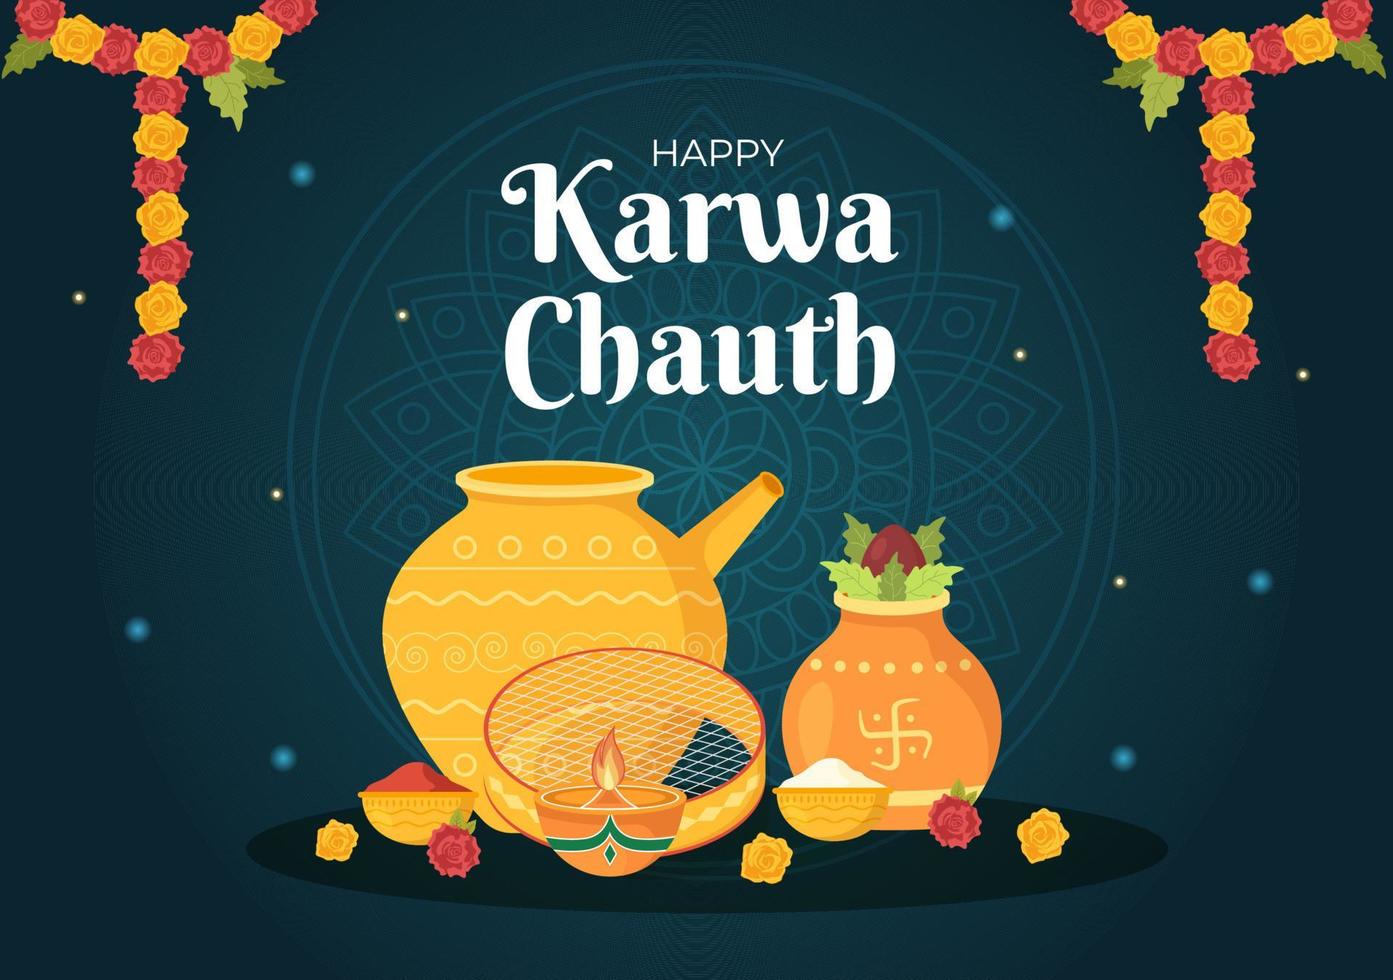 ilustración de dibujos animados plana dibujada a mano del festival karwa chauth para comenzar la luna nueva al ver la salida de la luna en noviembre de esposas para sus esposos vector